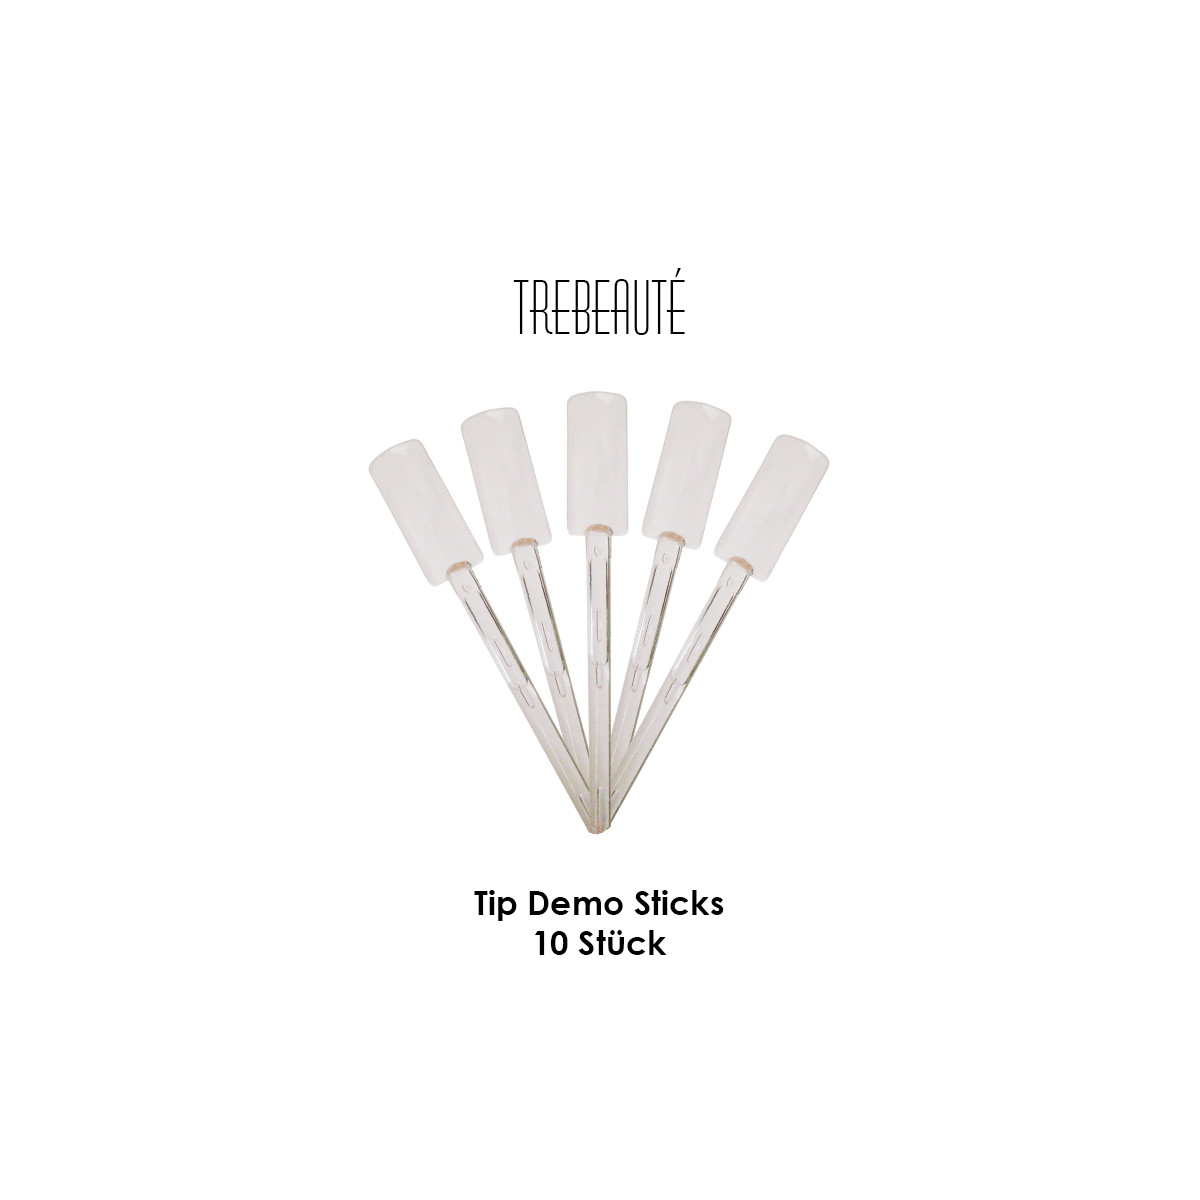 Tip Demo Sticks - 10 Stück